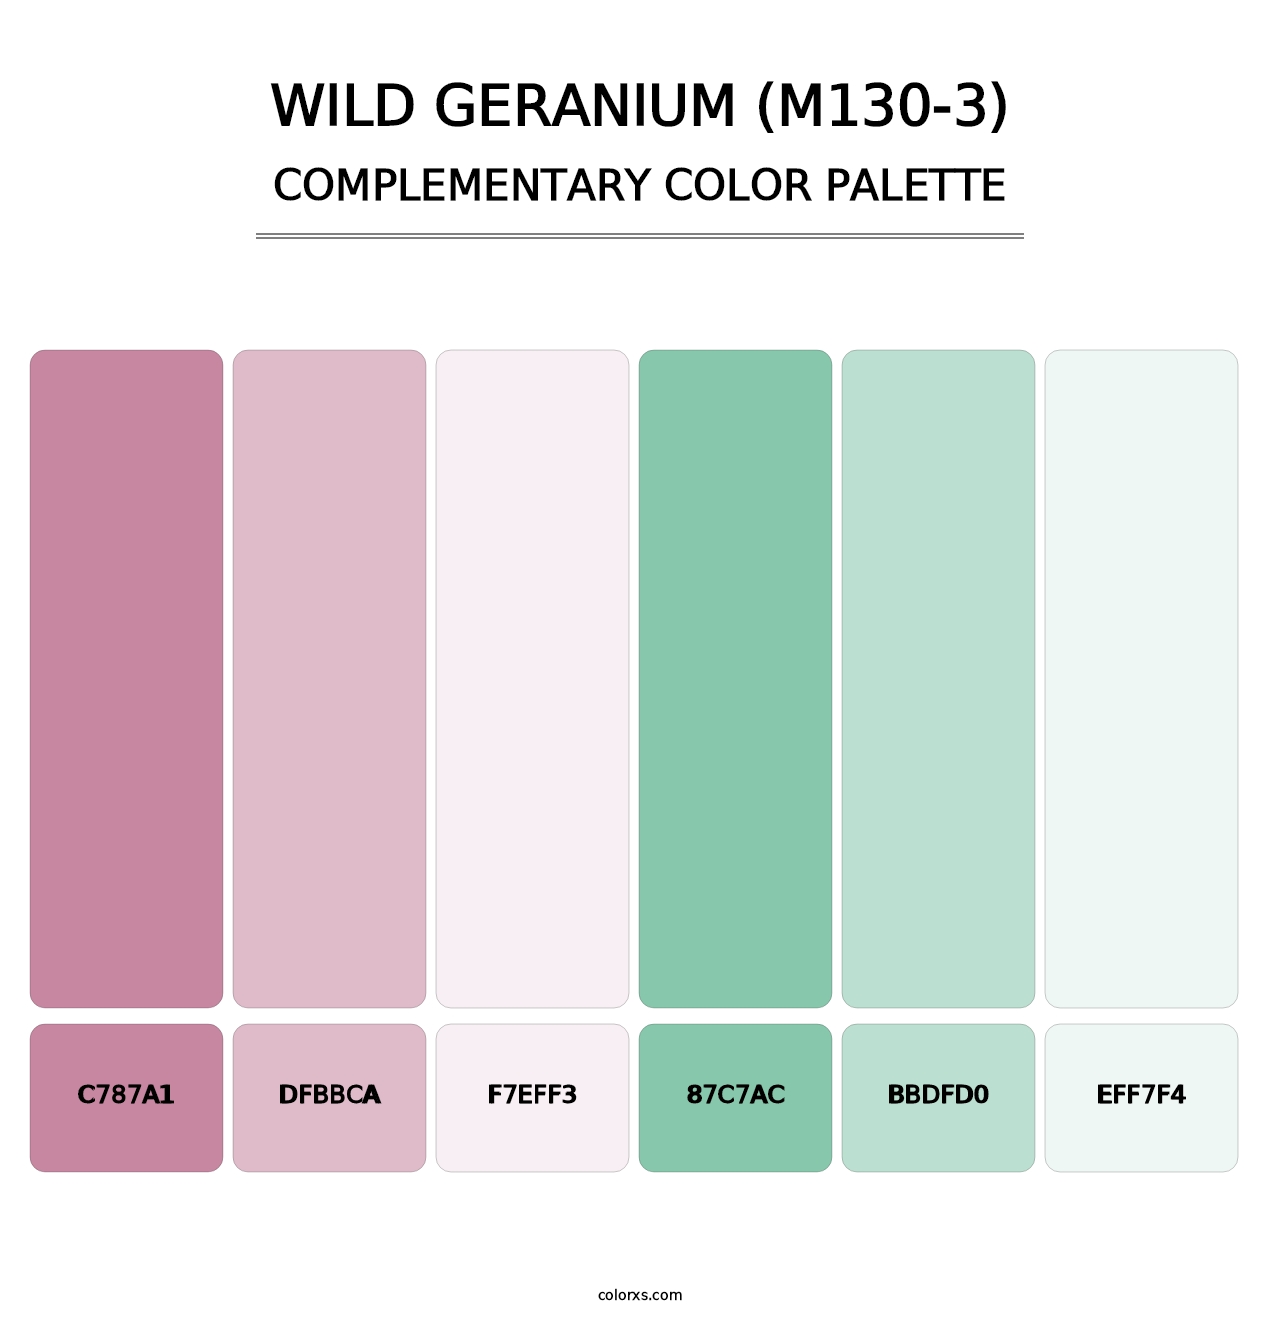 Wild Geranium (M130-3) - Complementary Color Palette